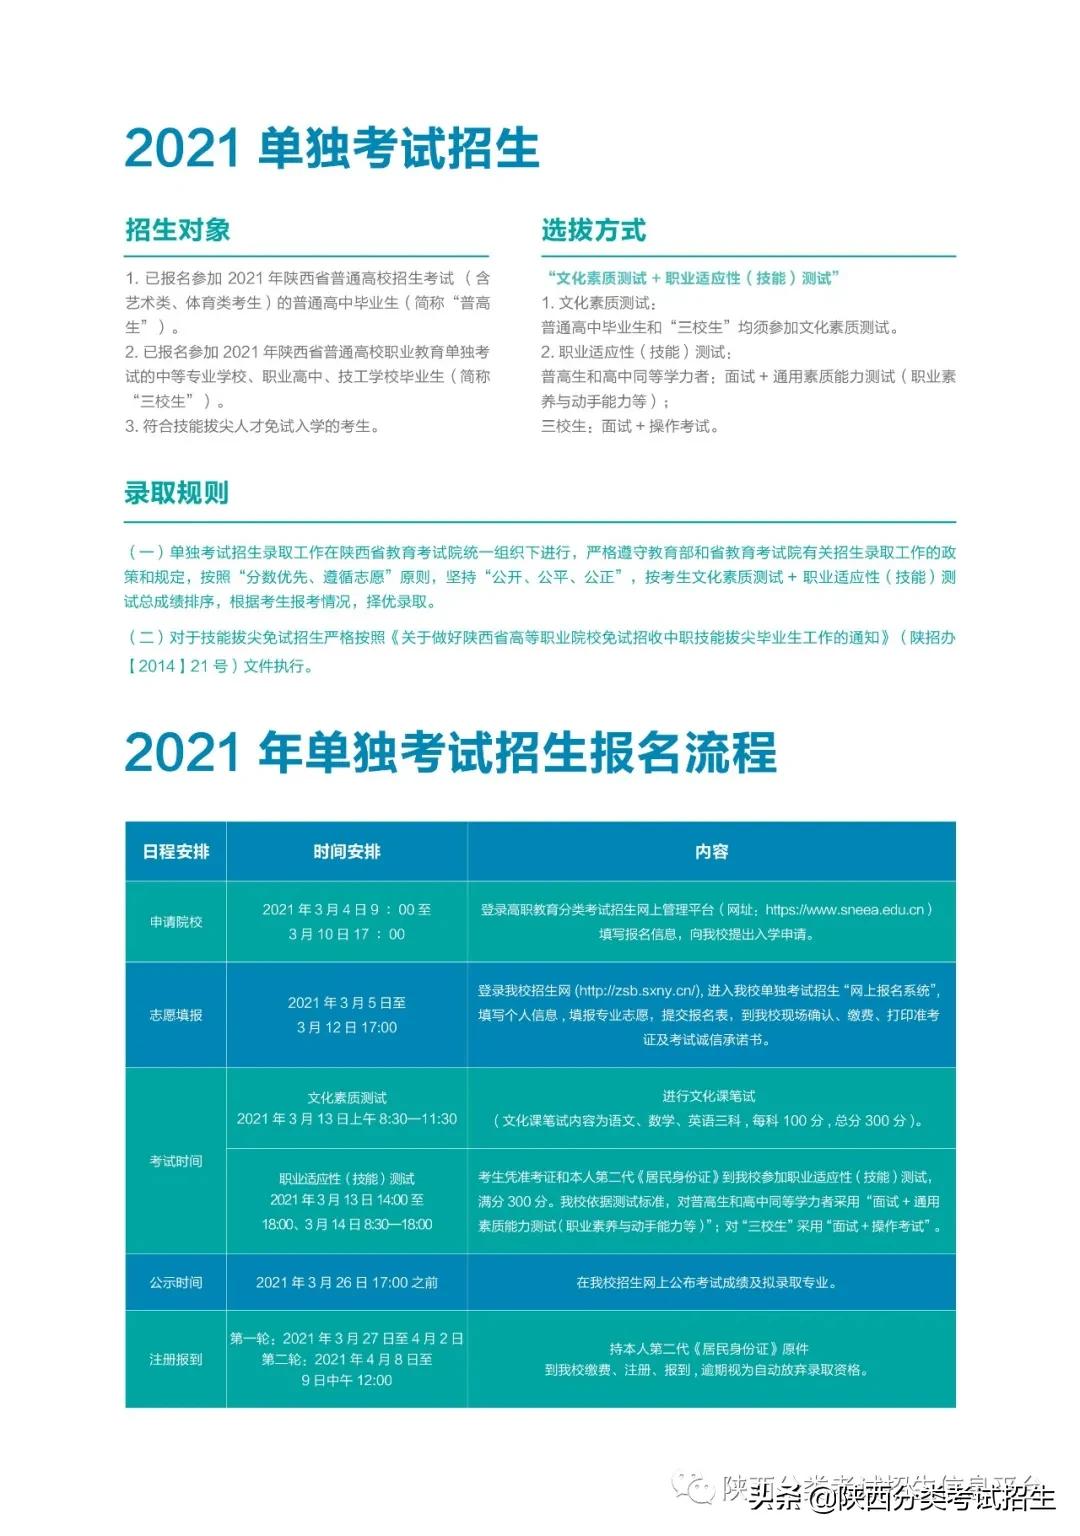 「报考指南」陕西能源职业技术学院2021年单独考试报考指南